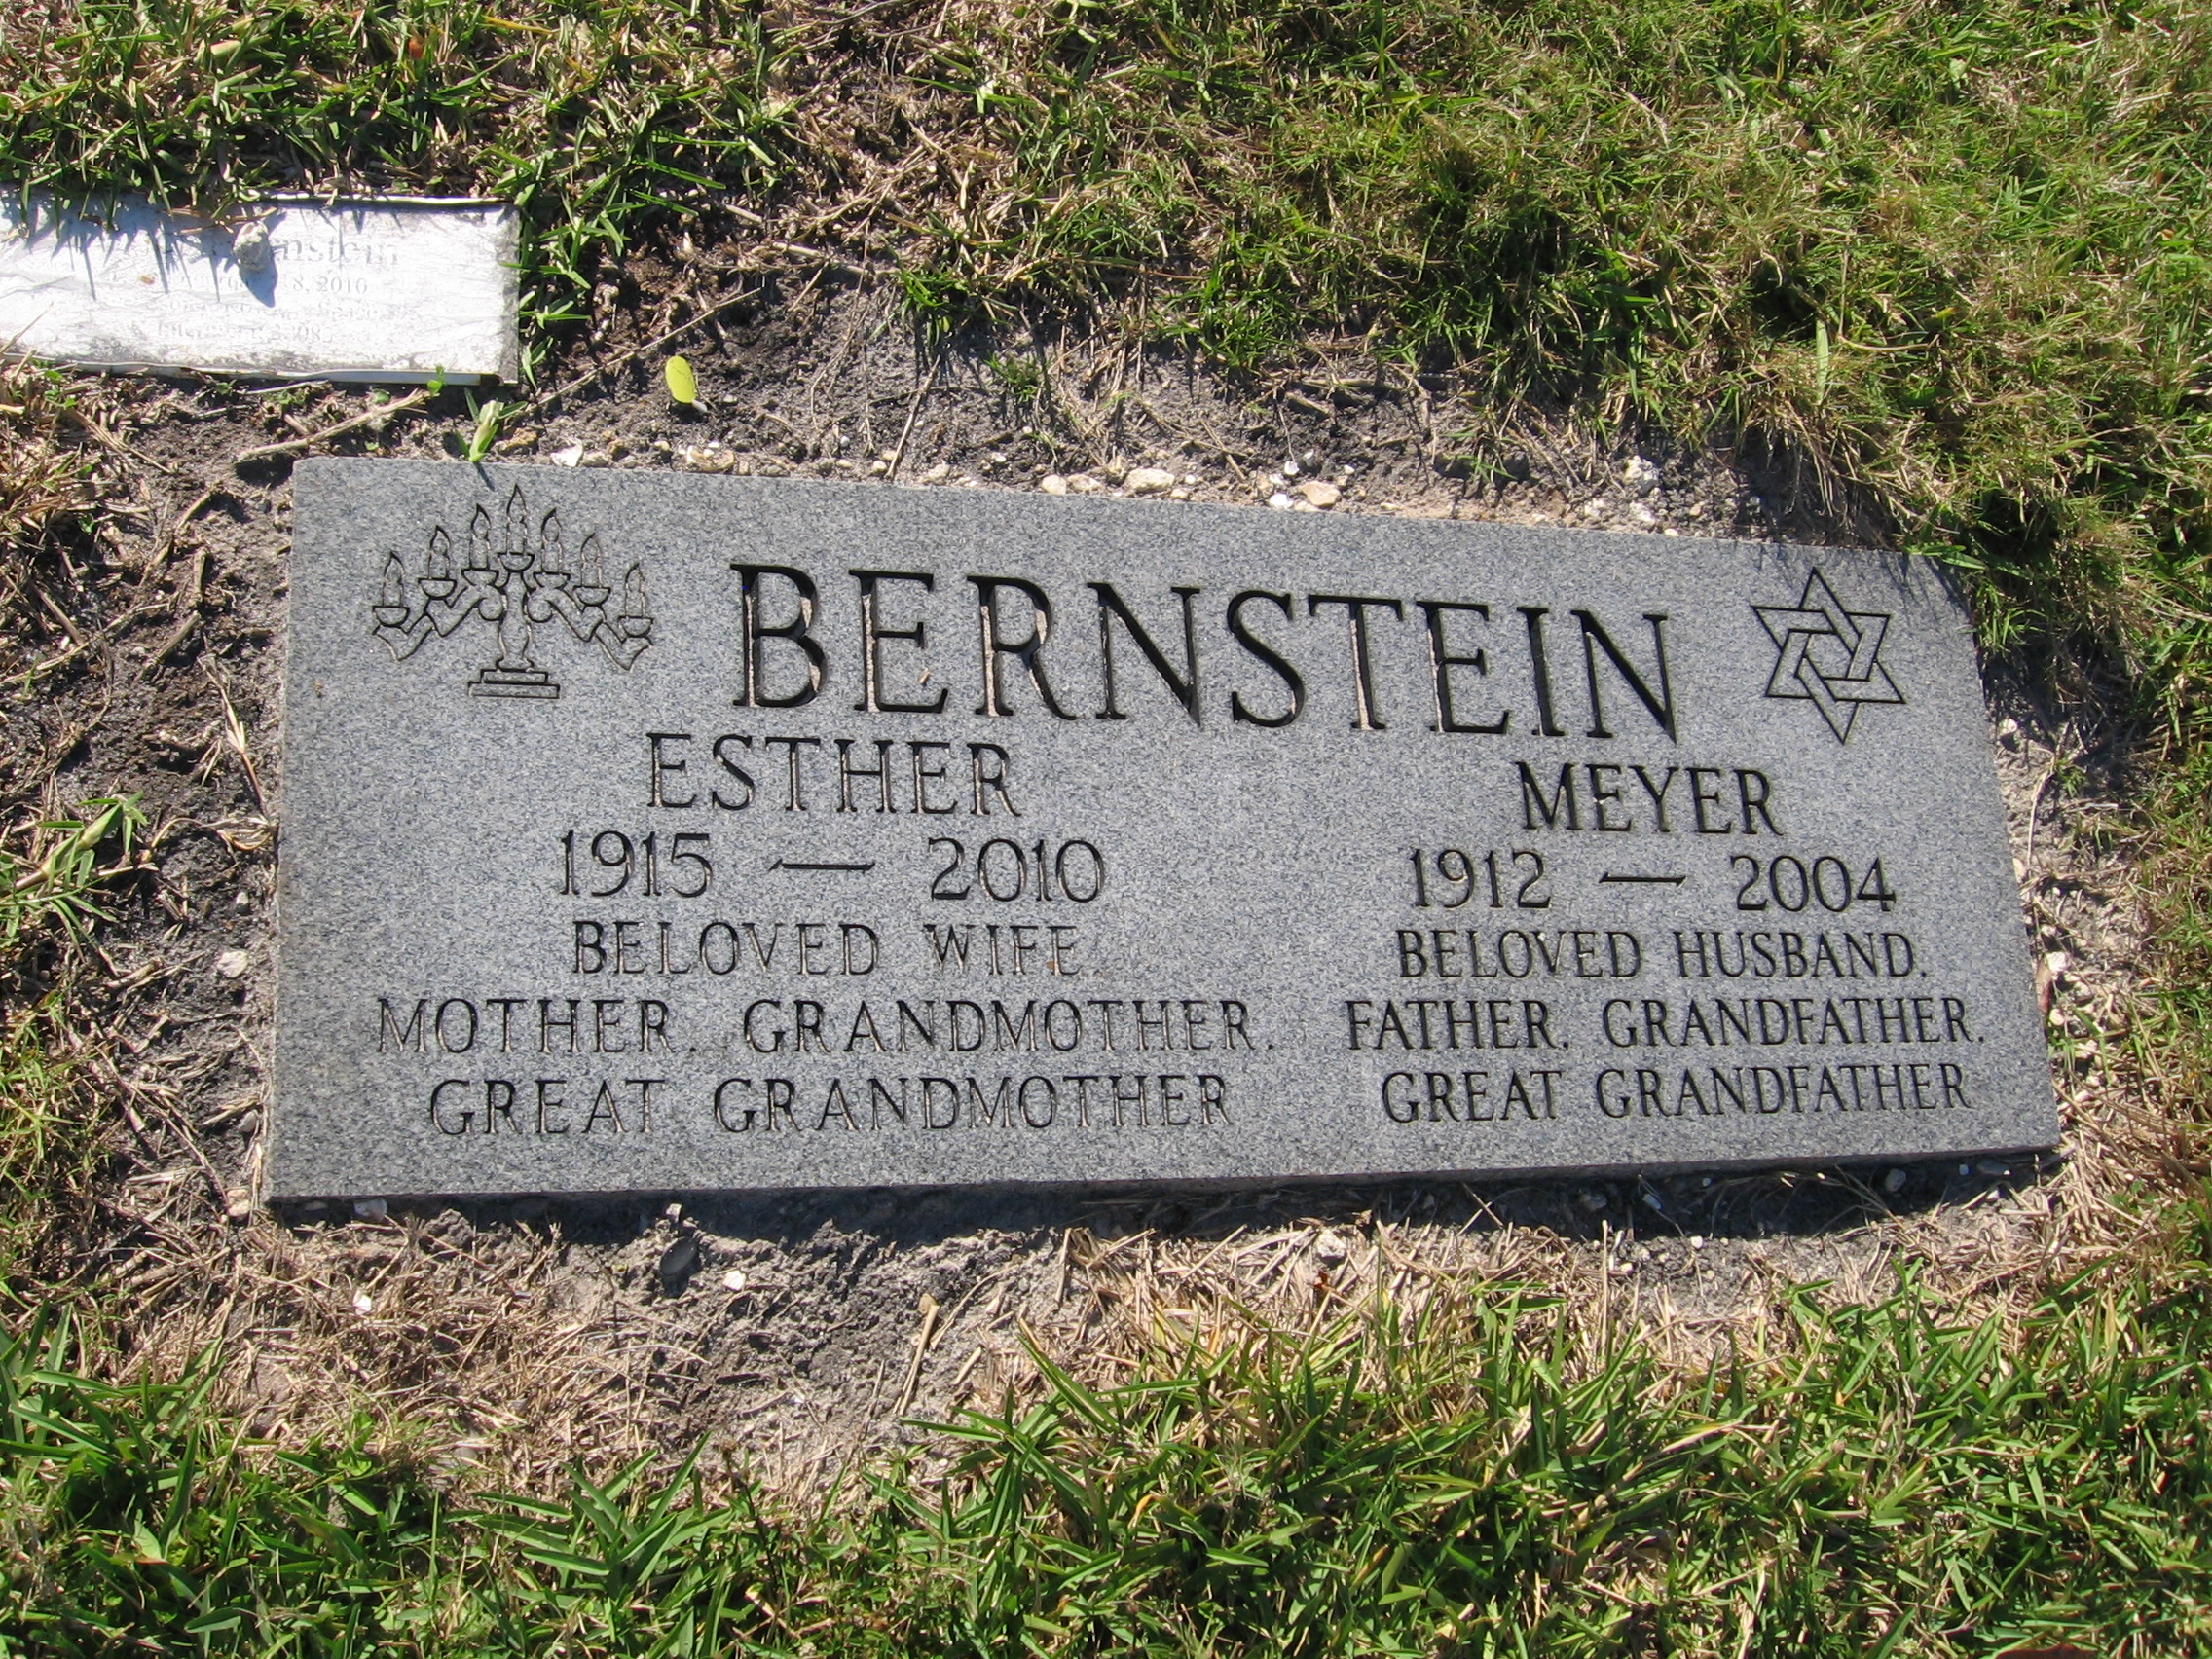 Esther Bernstein